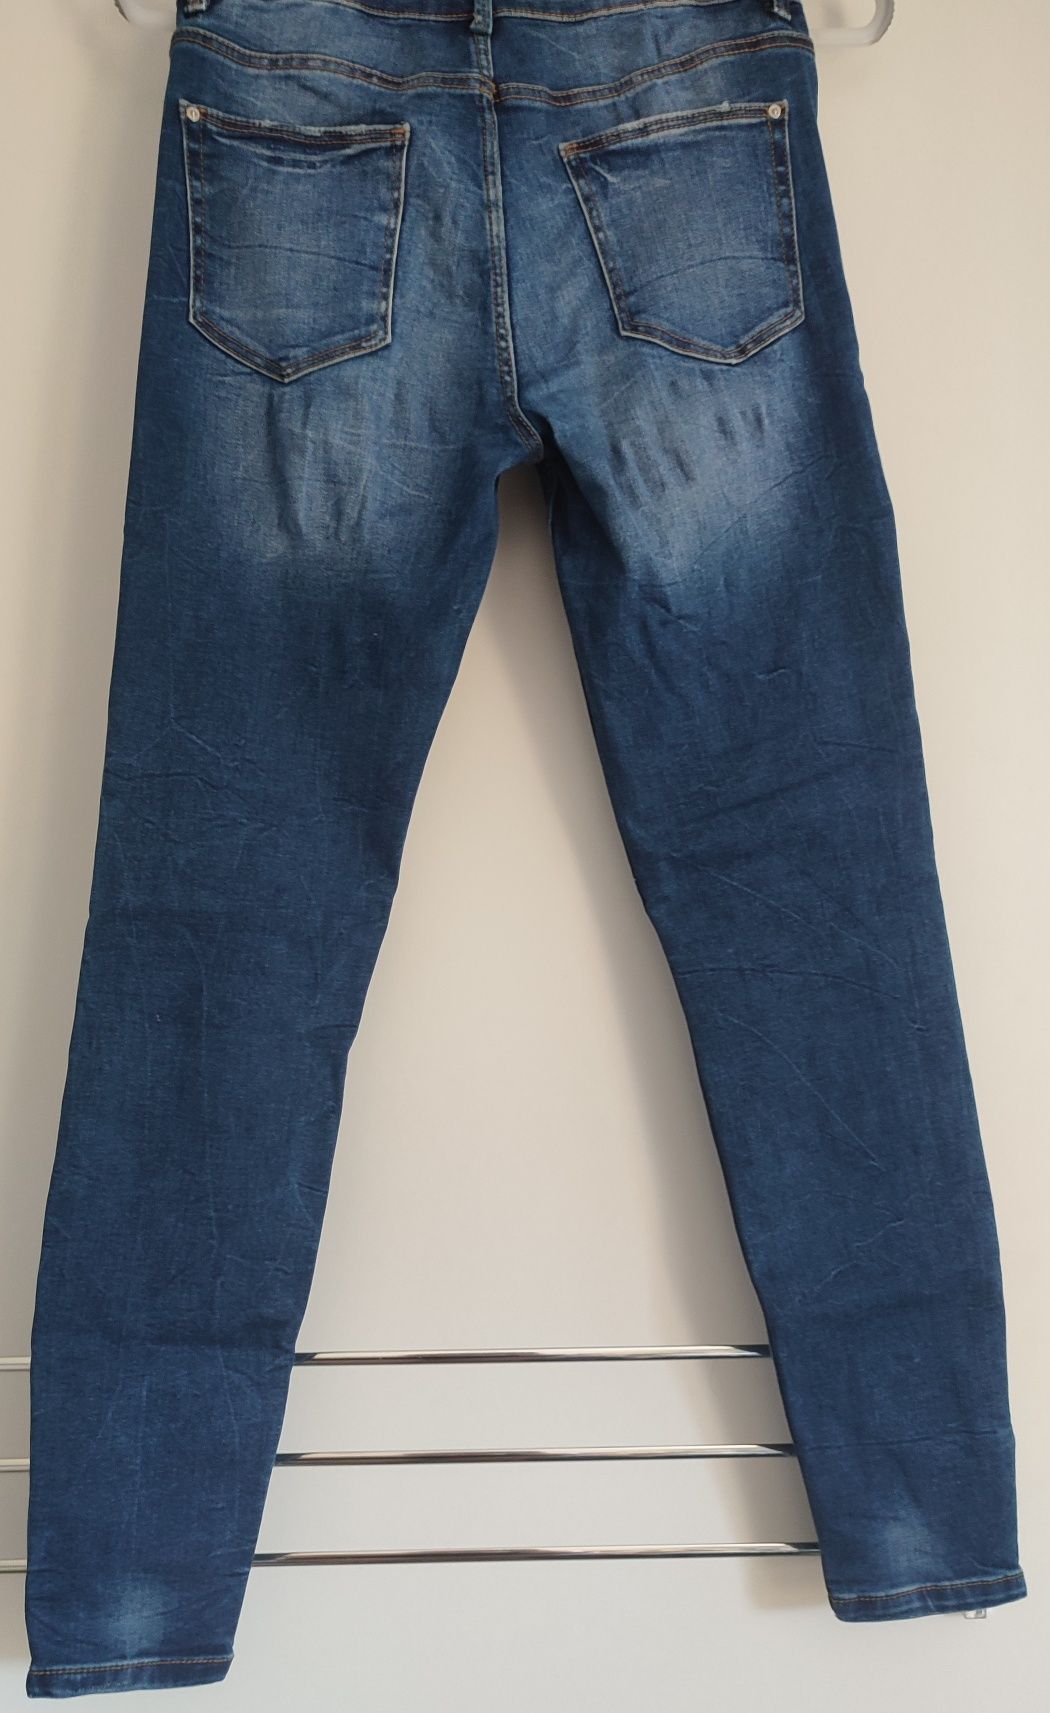 Spodnie jeans zamki